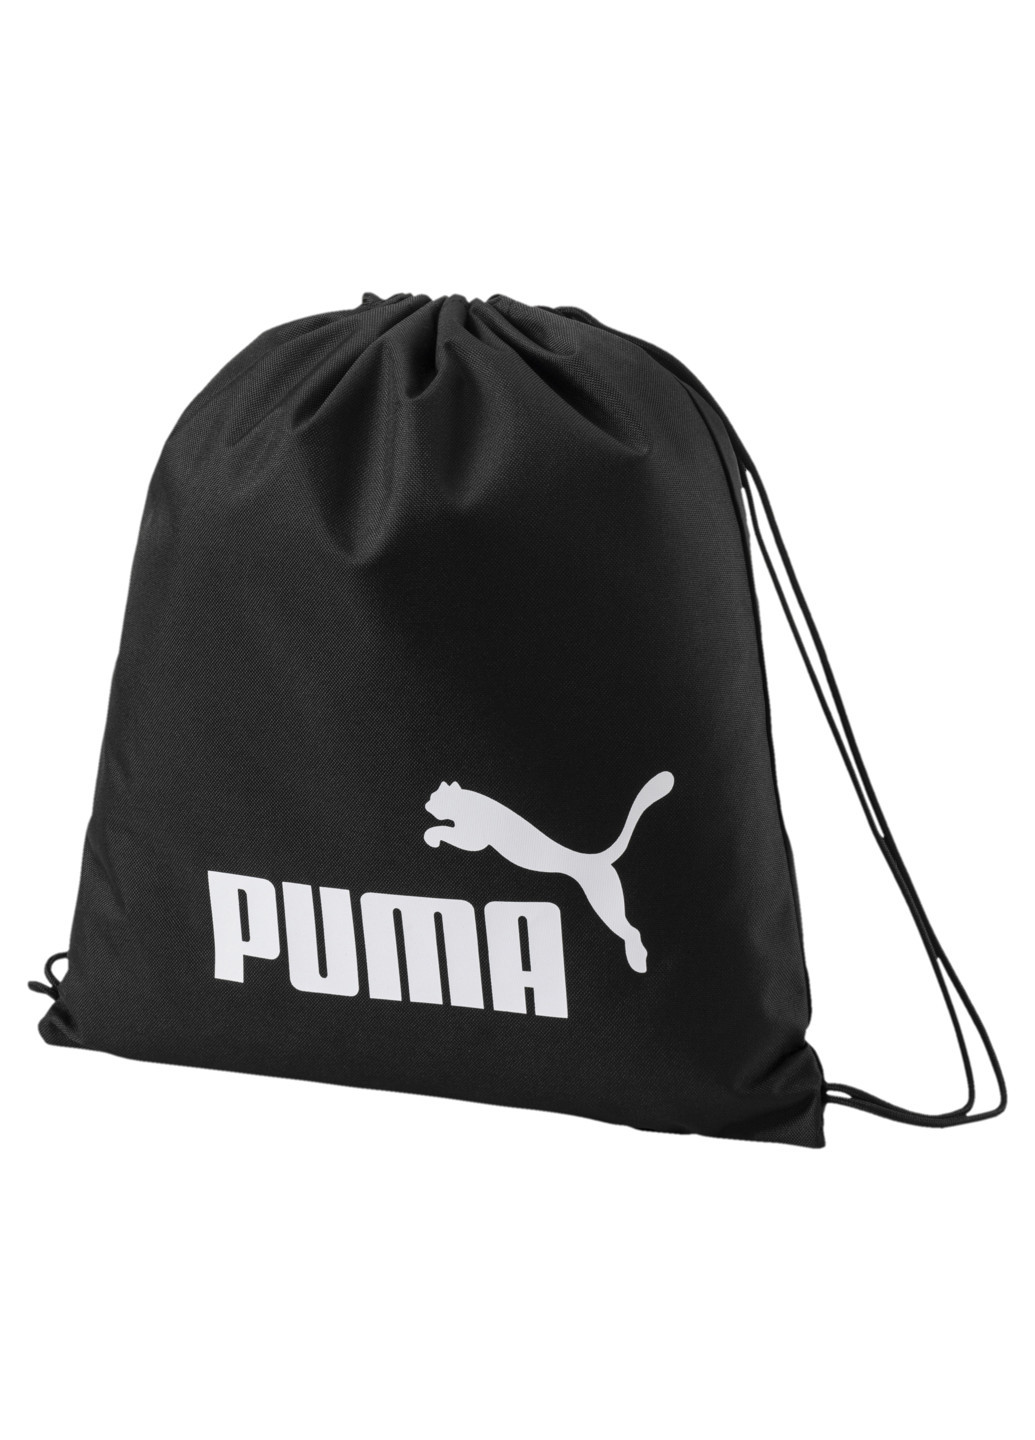 Рюкзак Puma Phase Gym Sack чёрный спортивный